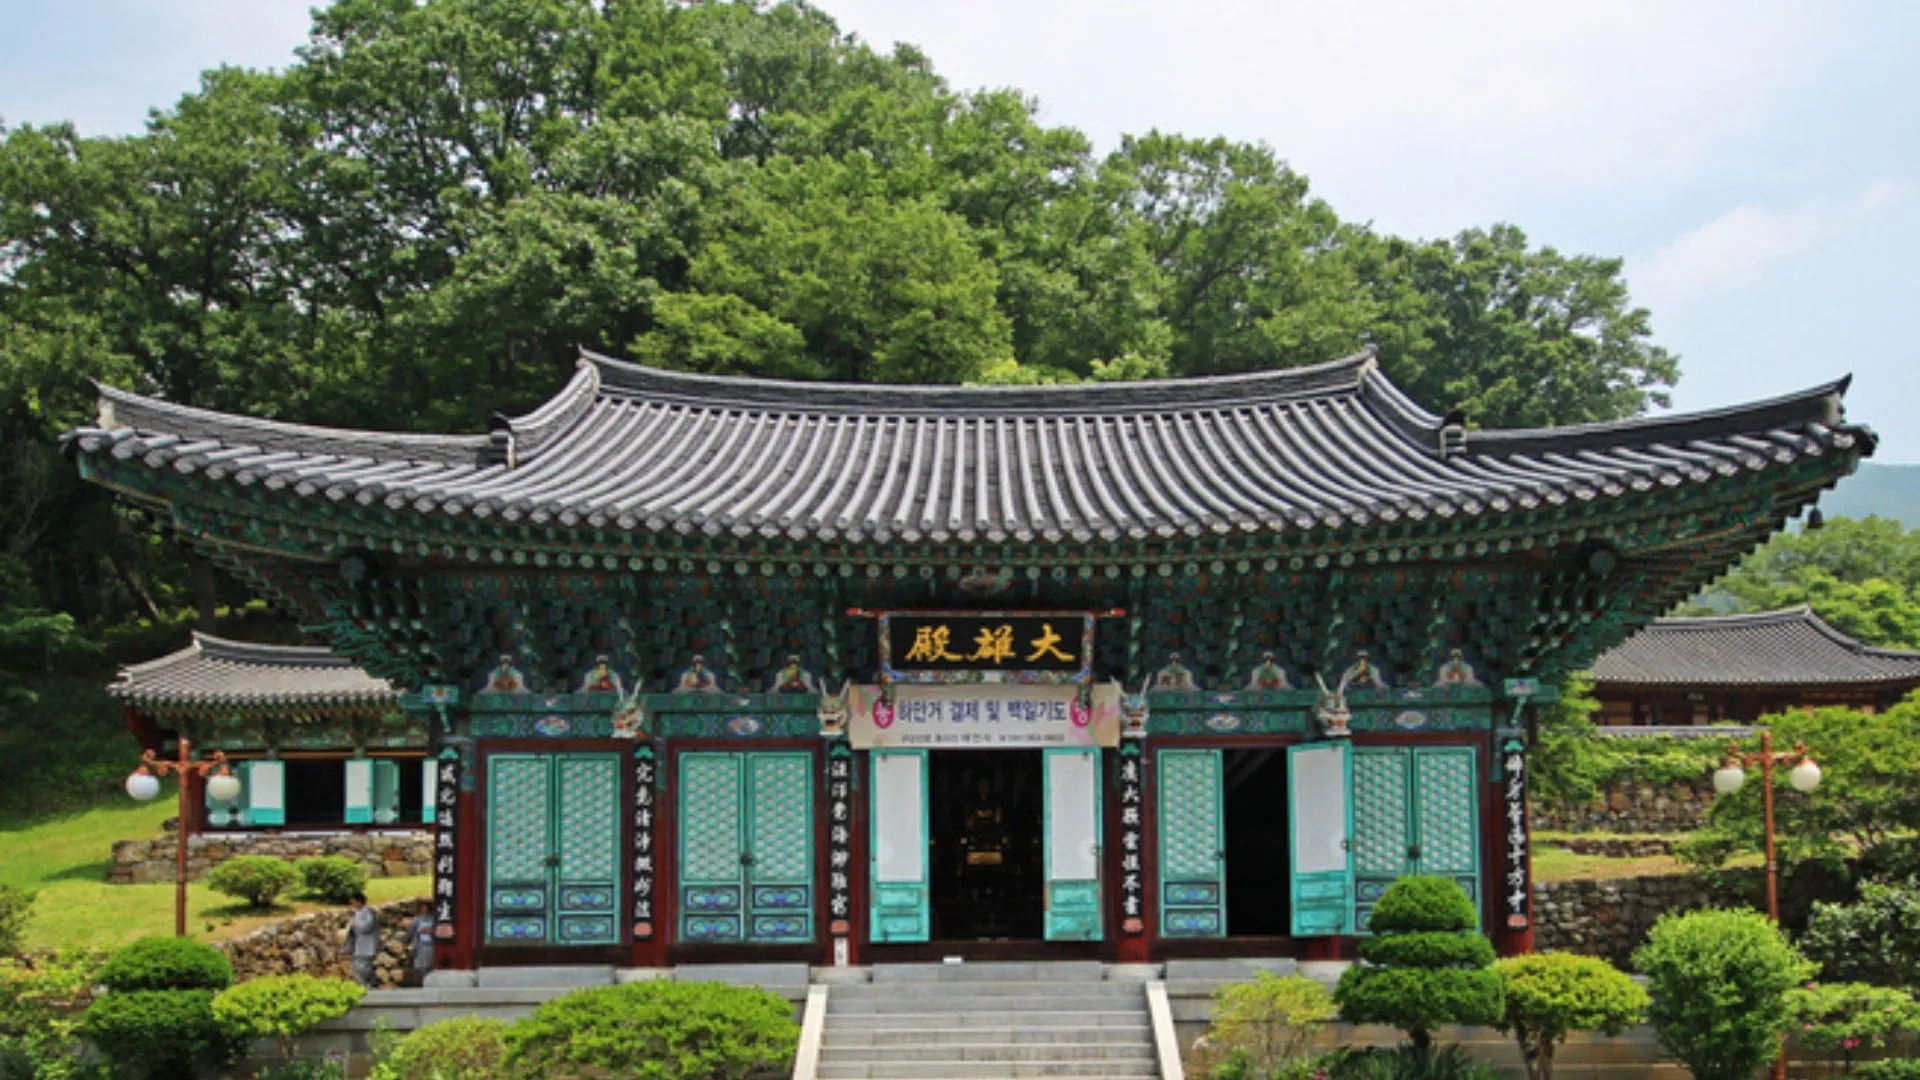 Đền Taeansa Đền Taeansa Tín dụng hình ảnh: thăm Hàn Quốc Ẩn mình dưới chân núi Dongnisan, Chùa Taeansa được thành lập bởi ba nhà sư trong thời kỳ Vua Kyungdeok của triều đại Silla. Sau đó, nhà sư Hyecheol đã mở rộng ngôi chùa lên 132 phòng dưới thời trị vì của Goryeo Taejo, khiến nơi đây trở thành trung tâm giáo dục quan trọng ở vùng núi Dongnisan.  Đường đến ngôi chùa là một quãng đường lái xe dài 2,3 km tuyệt đẹp, mang đến những khung cảnh đẹp như tranh vẽ quanh năm. Đối với du khách, các điểm tham quan gần đó bao gồm Tháp Neungpa, nằm gần thung lũng Núi Dongli và Làng Gok-song Haneul Nari, cách đó 5 km lái xe.